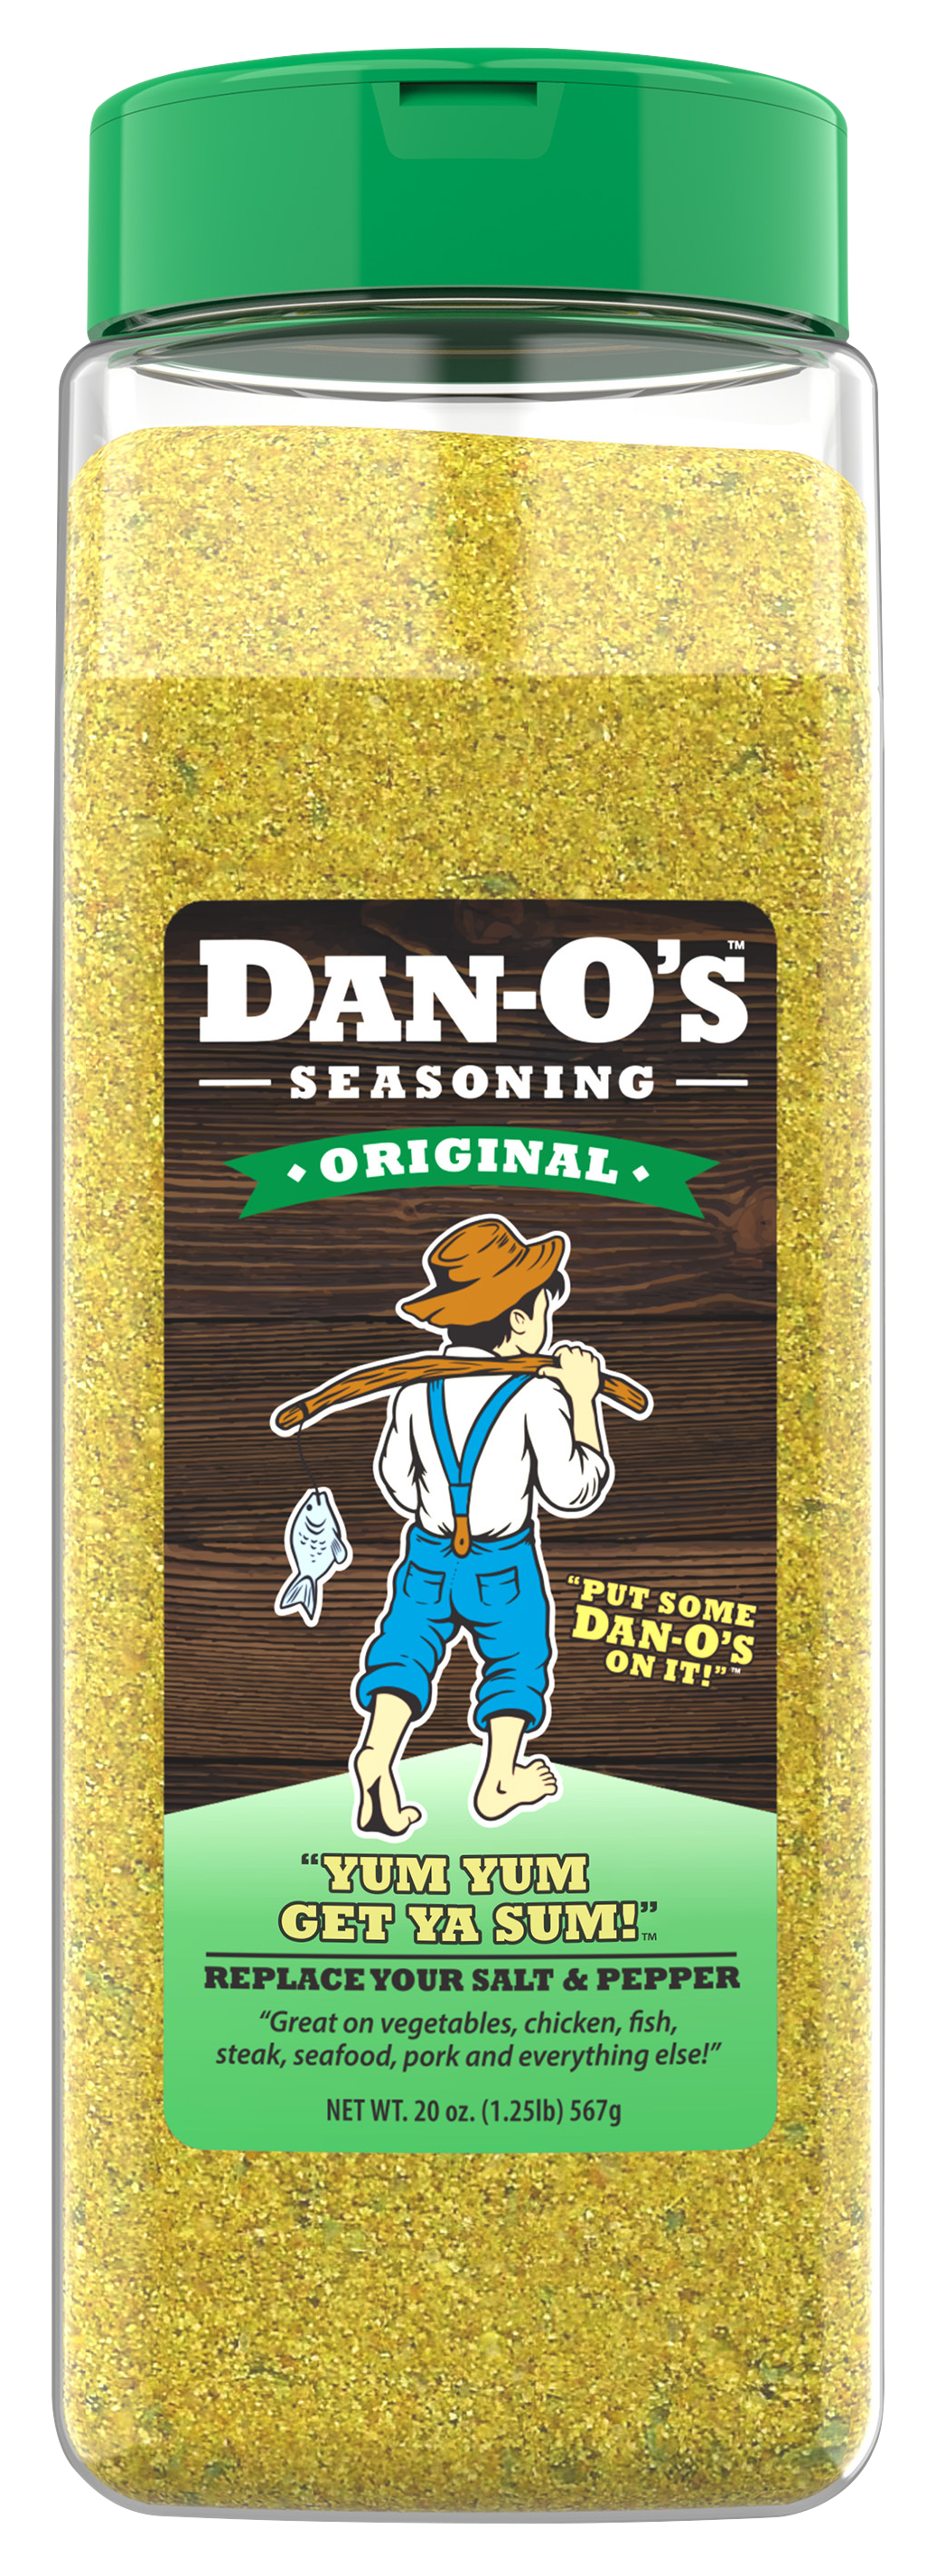 Dan-O's Seasoning (@danosseasoning) Official